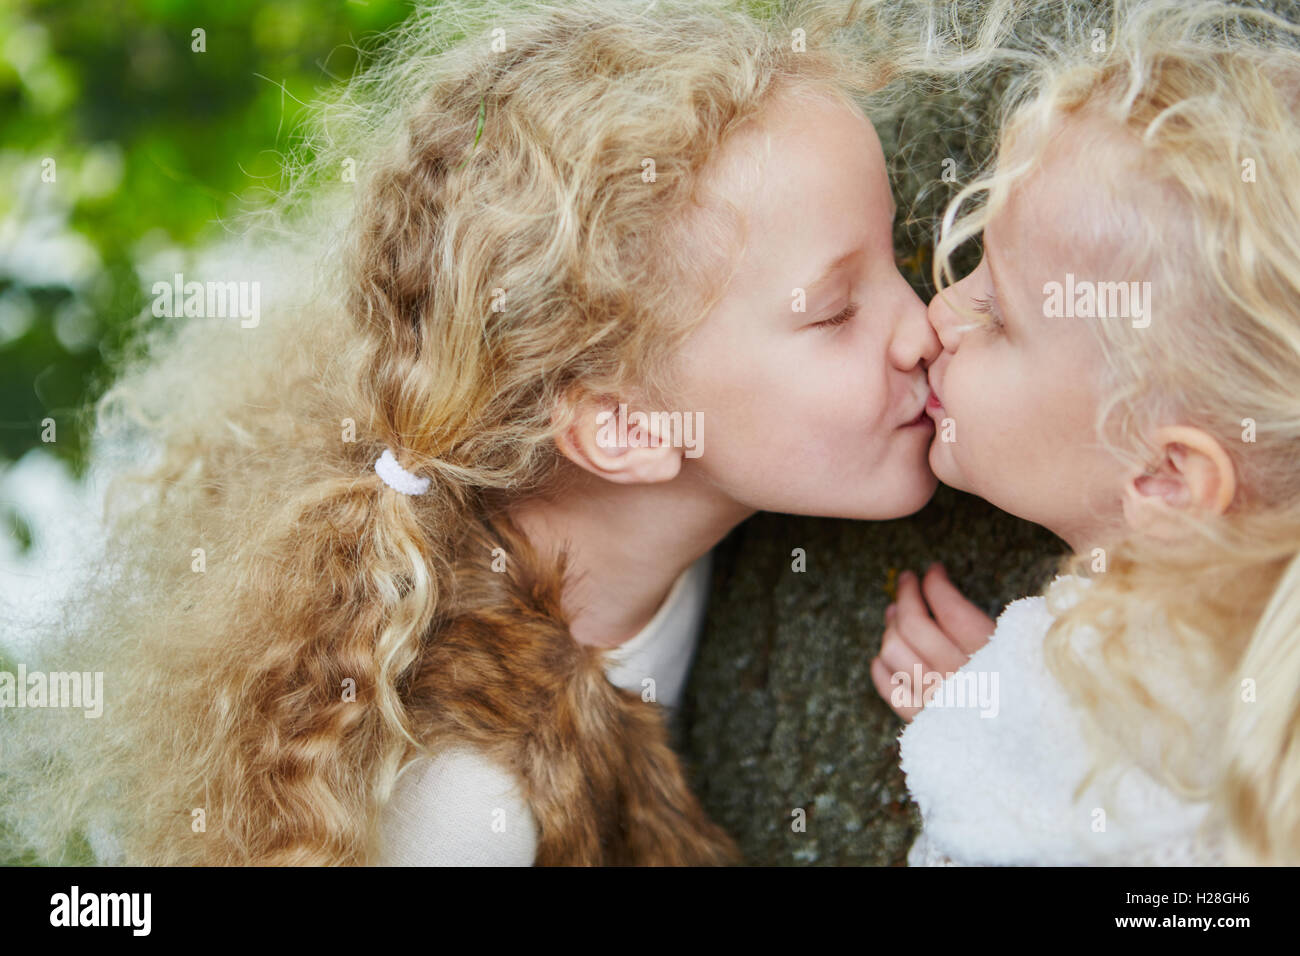 Deux petites filles soeur frère baisers avec amour et affection Banque D'Images